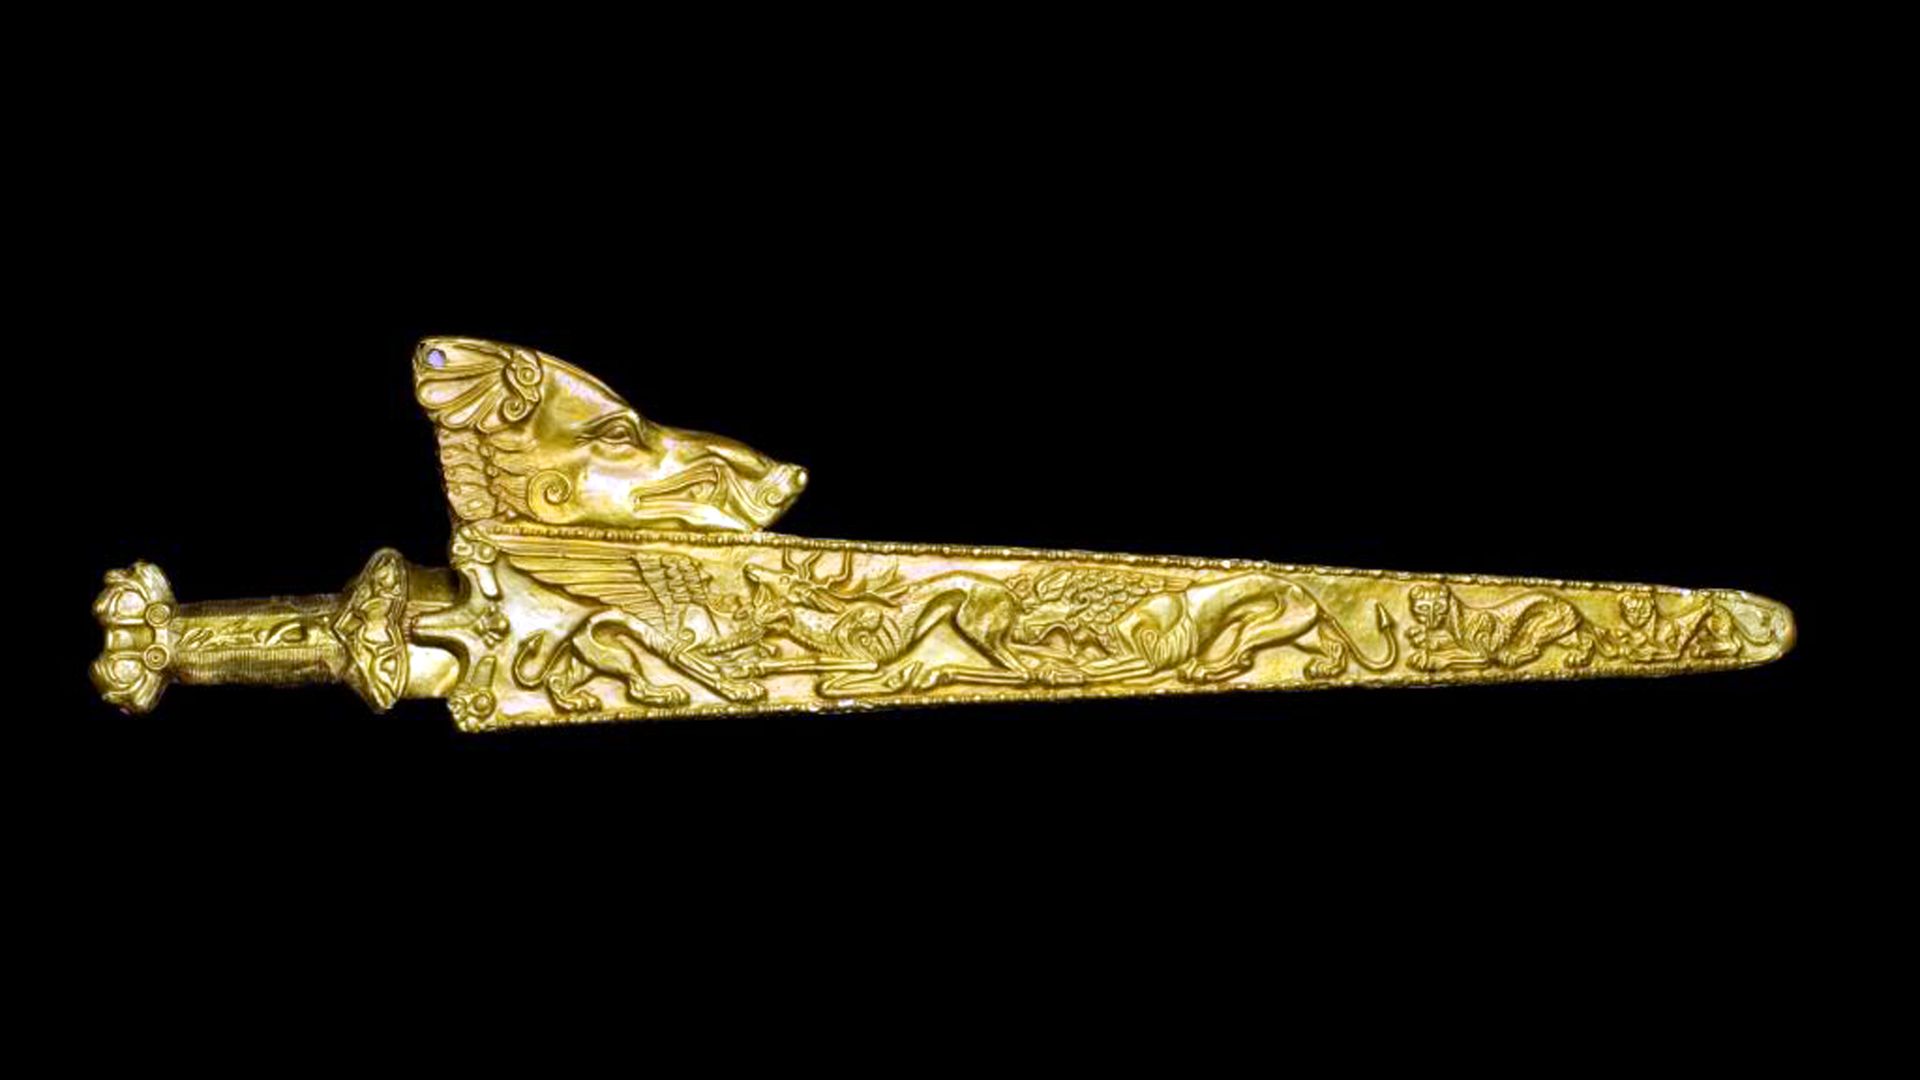  Scythian gold sword and scabbard in Melitupol, Ukraine.